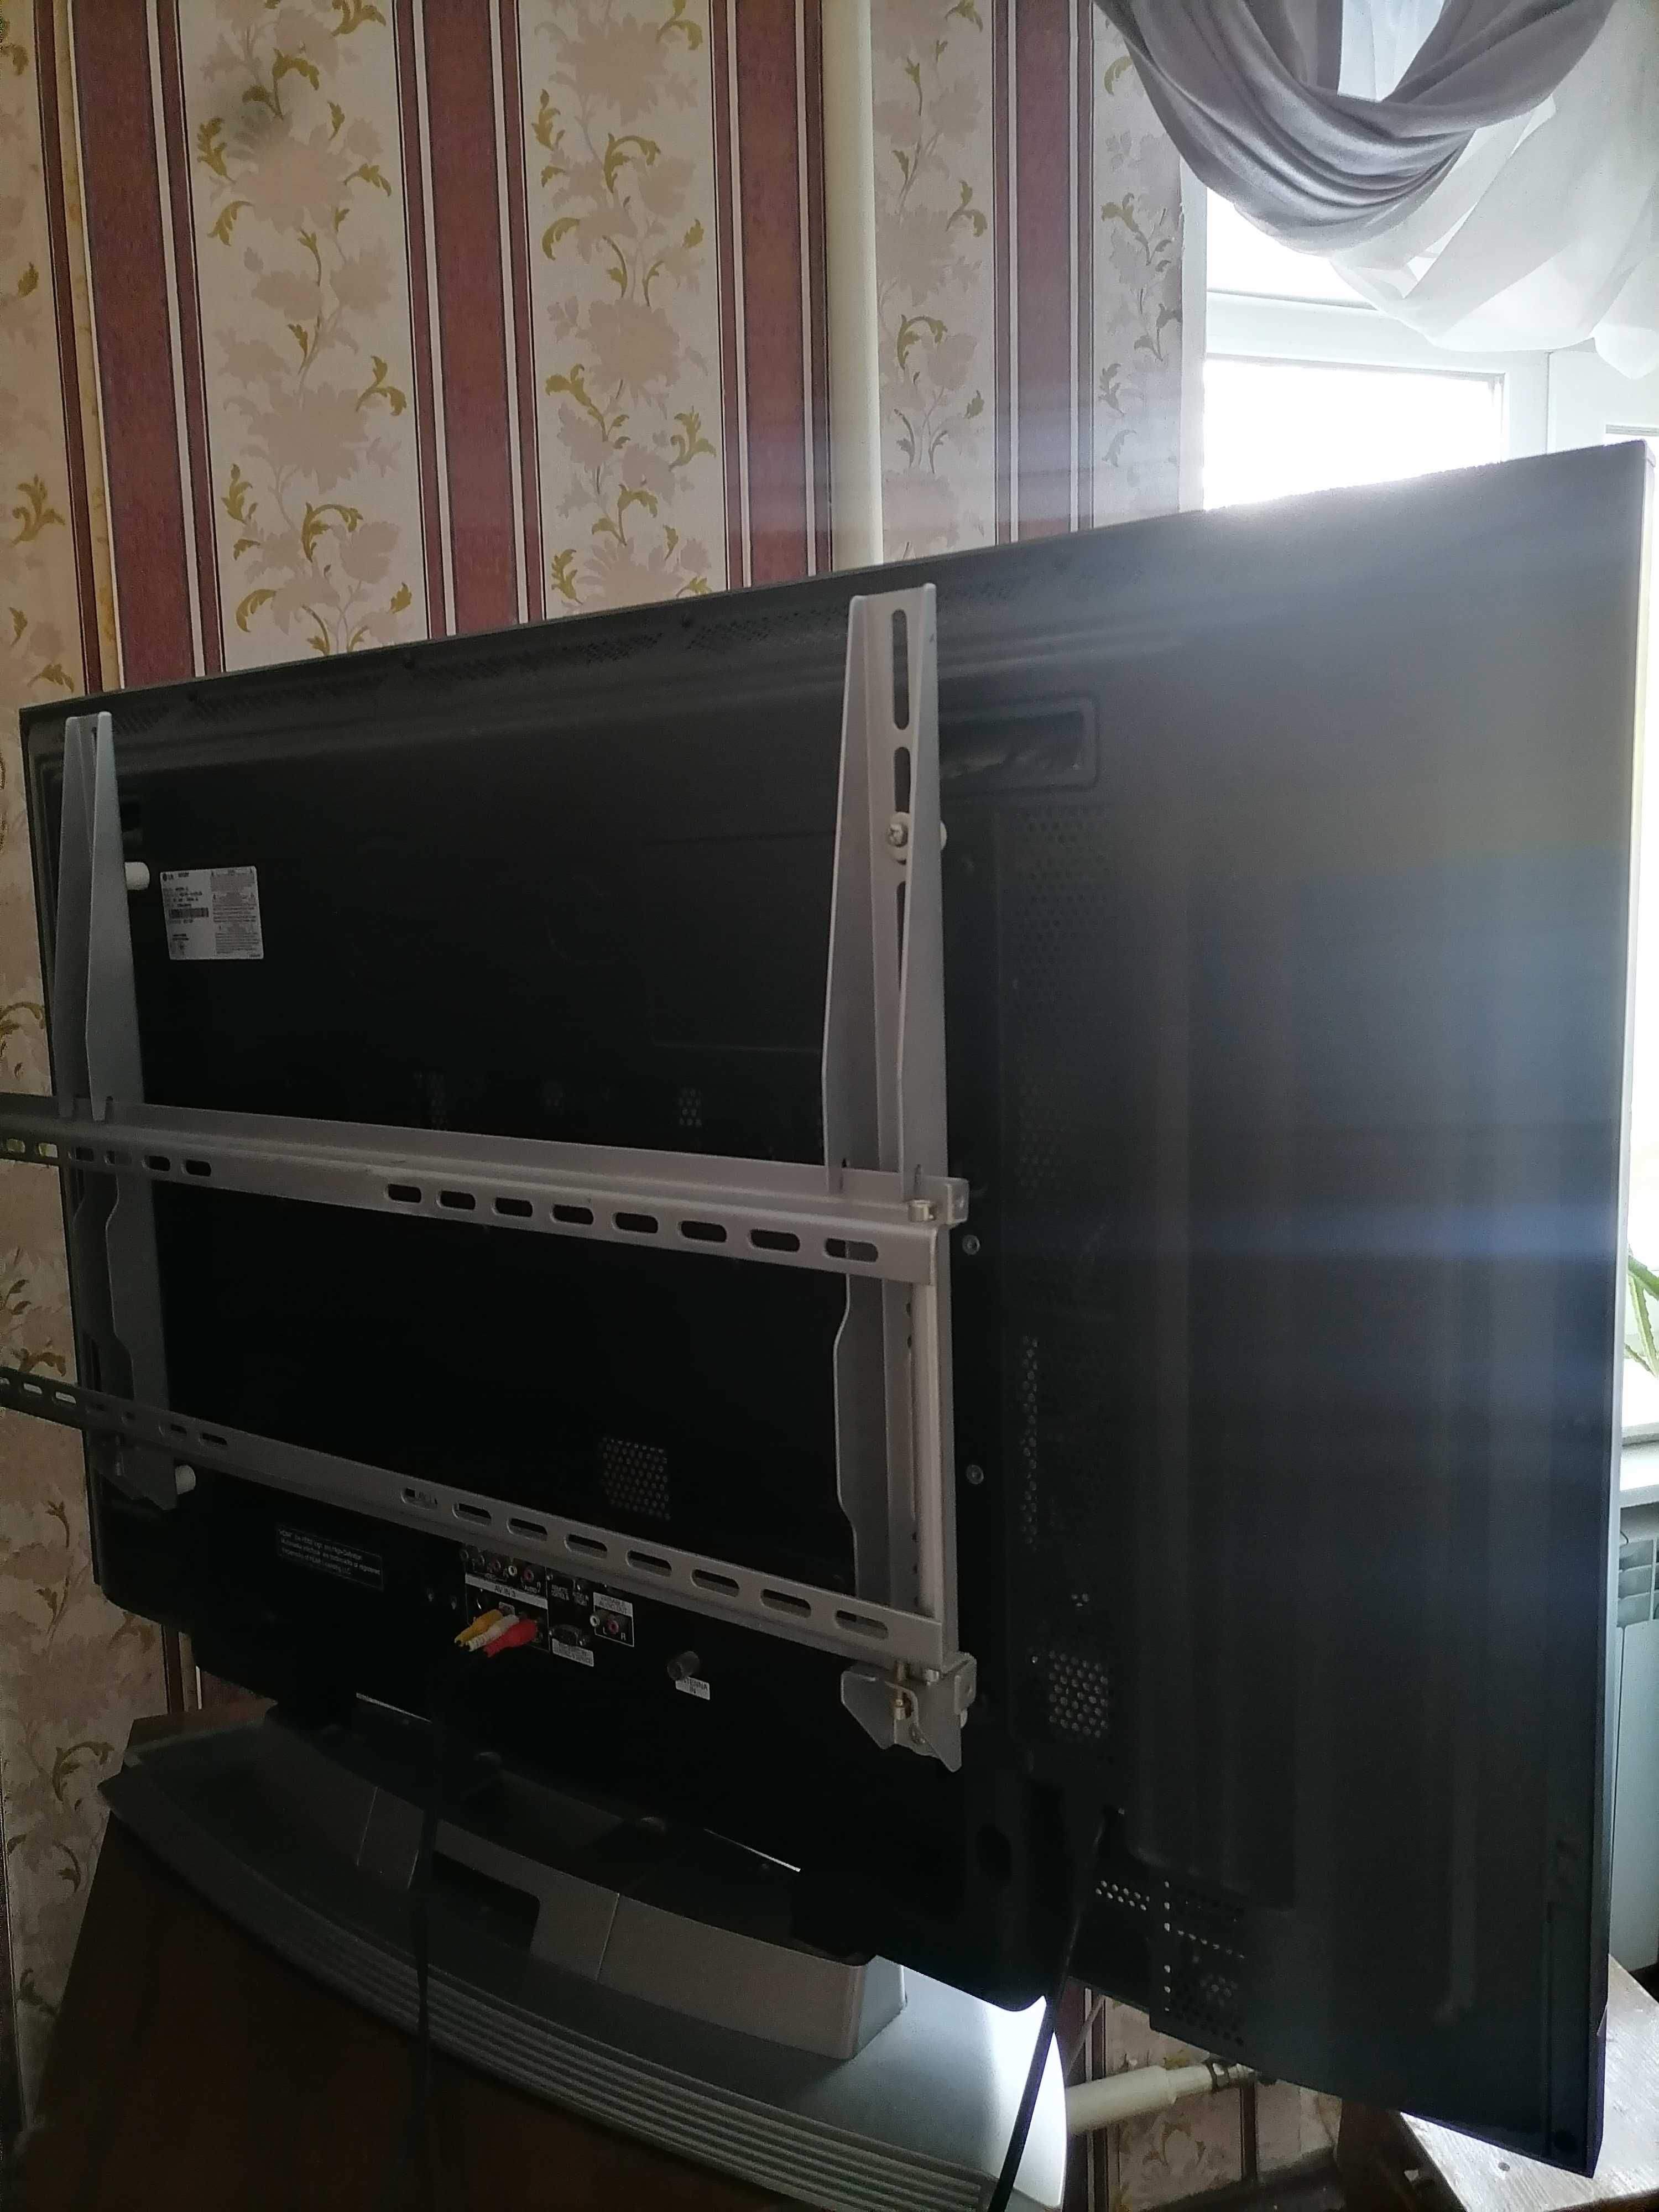 Продается  Телевизор  LG  42PC3RV  в отличном состоянии.